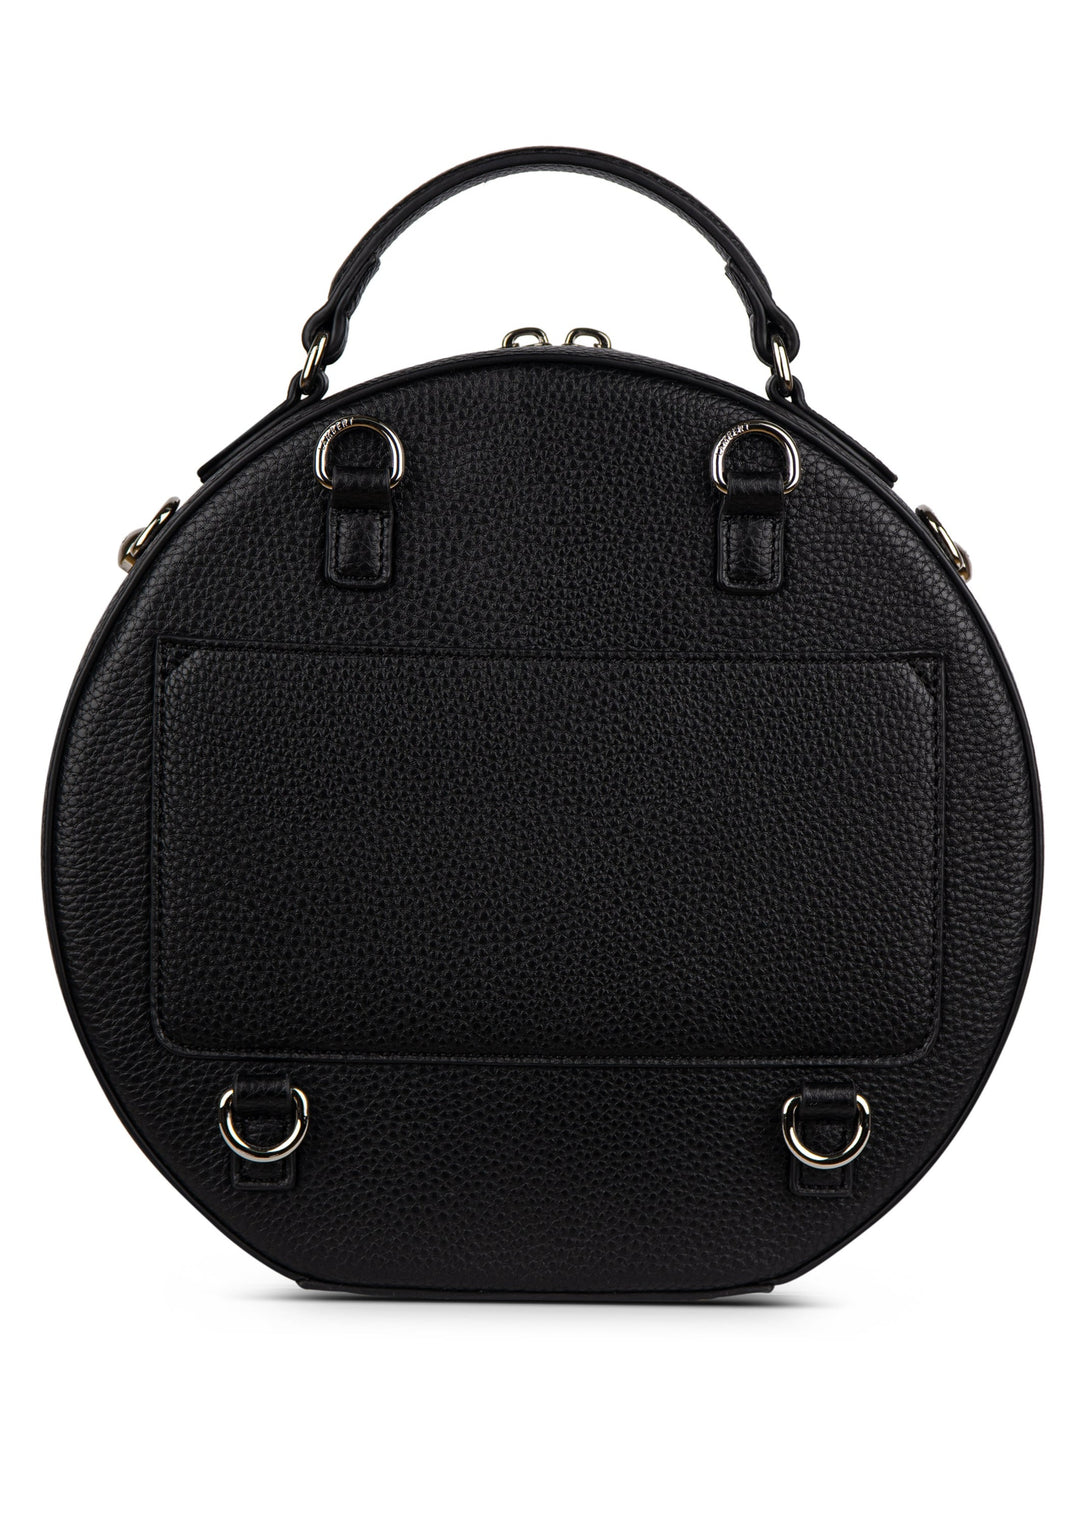 Lambert - The Livia 3-In-1 Handbag